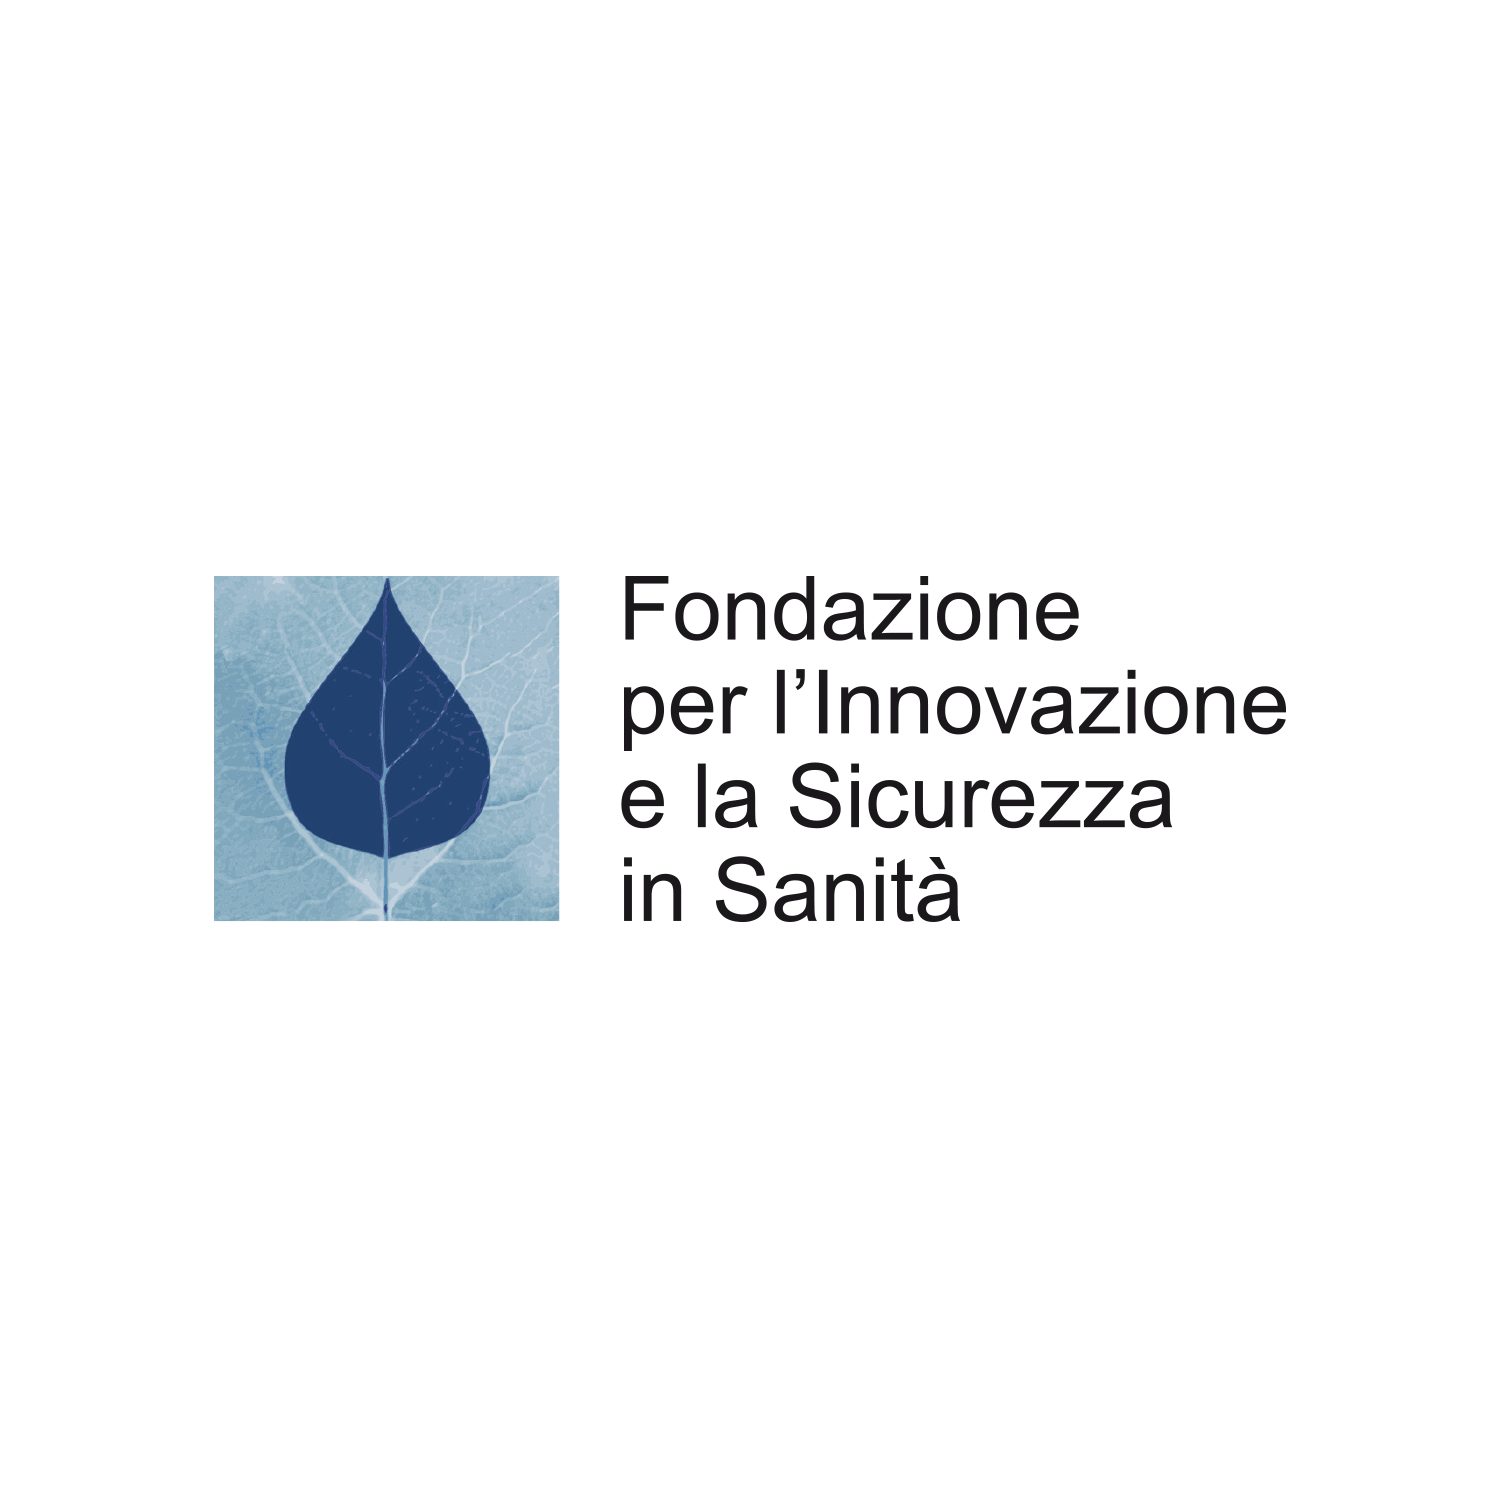 fondazione-innovazione-sicurezza-sanita